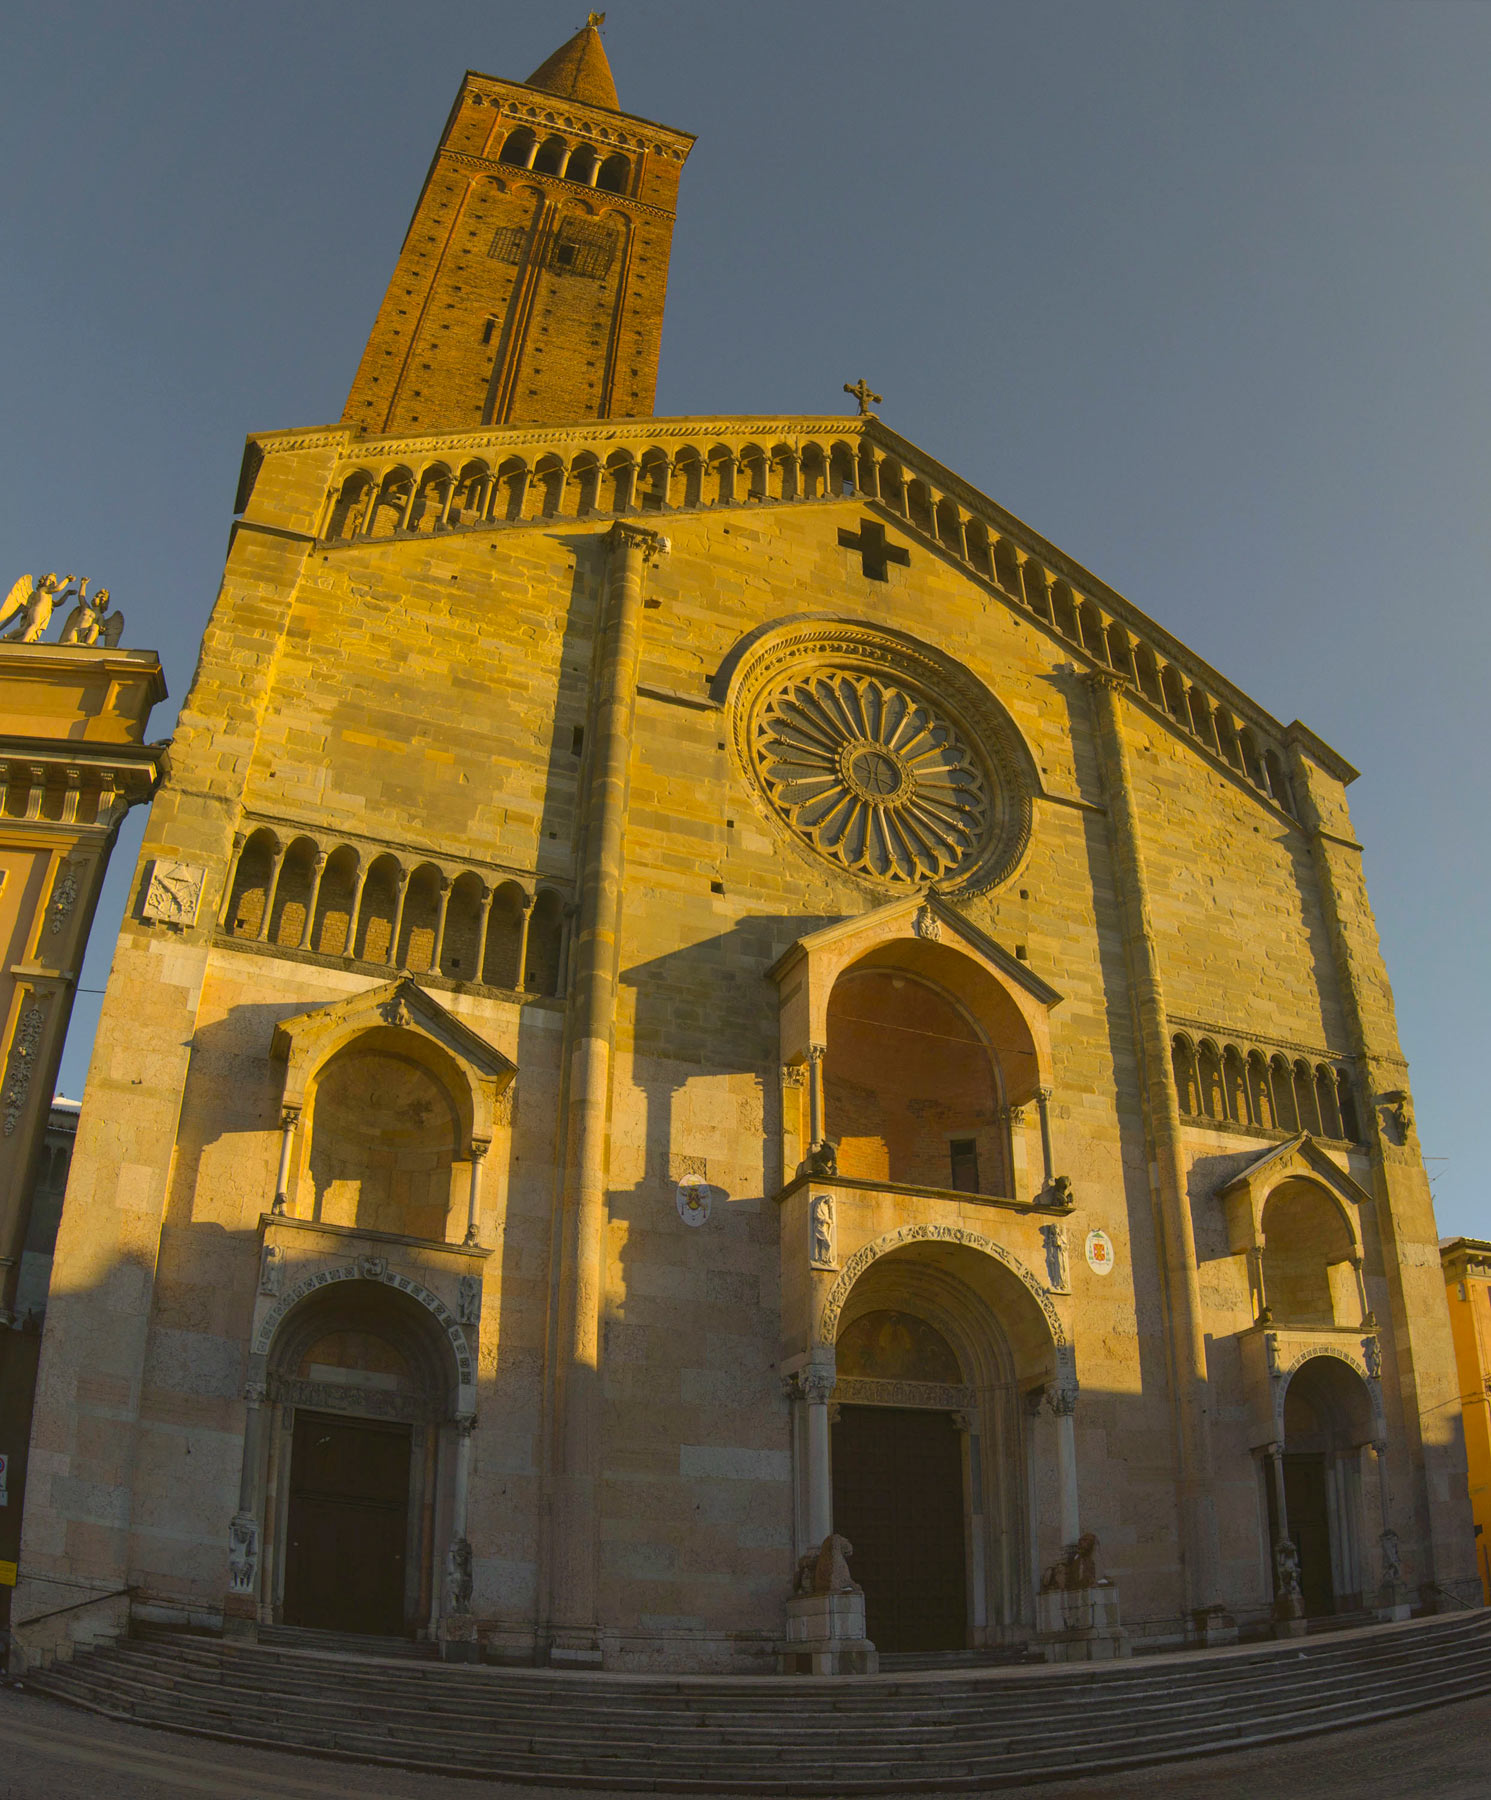 La facciata della Cattedrale di Piacenza. Ph. Credit Matteo Bettini
